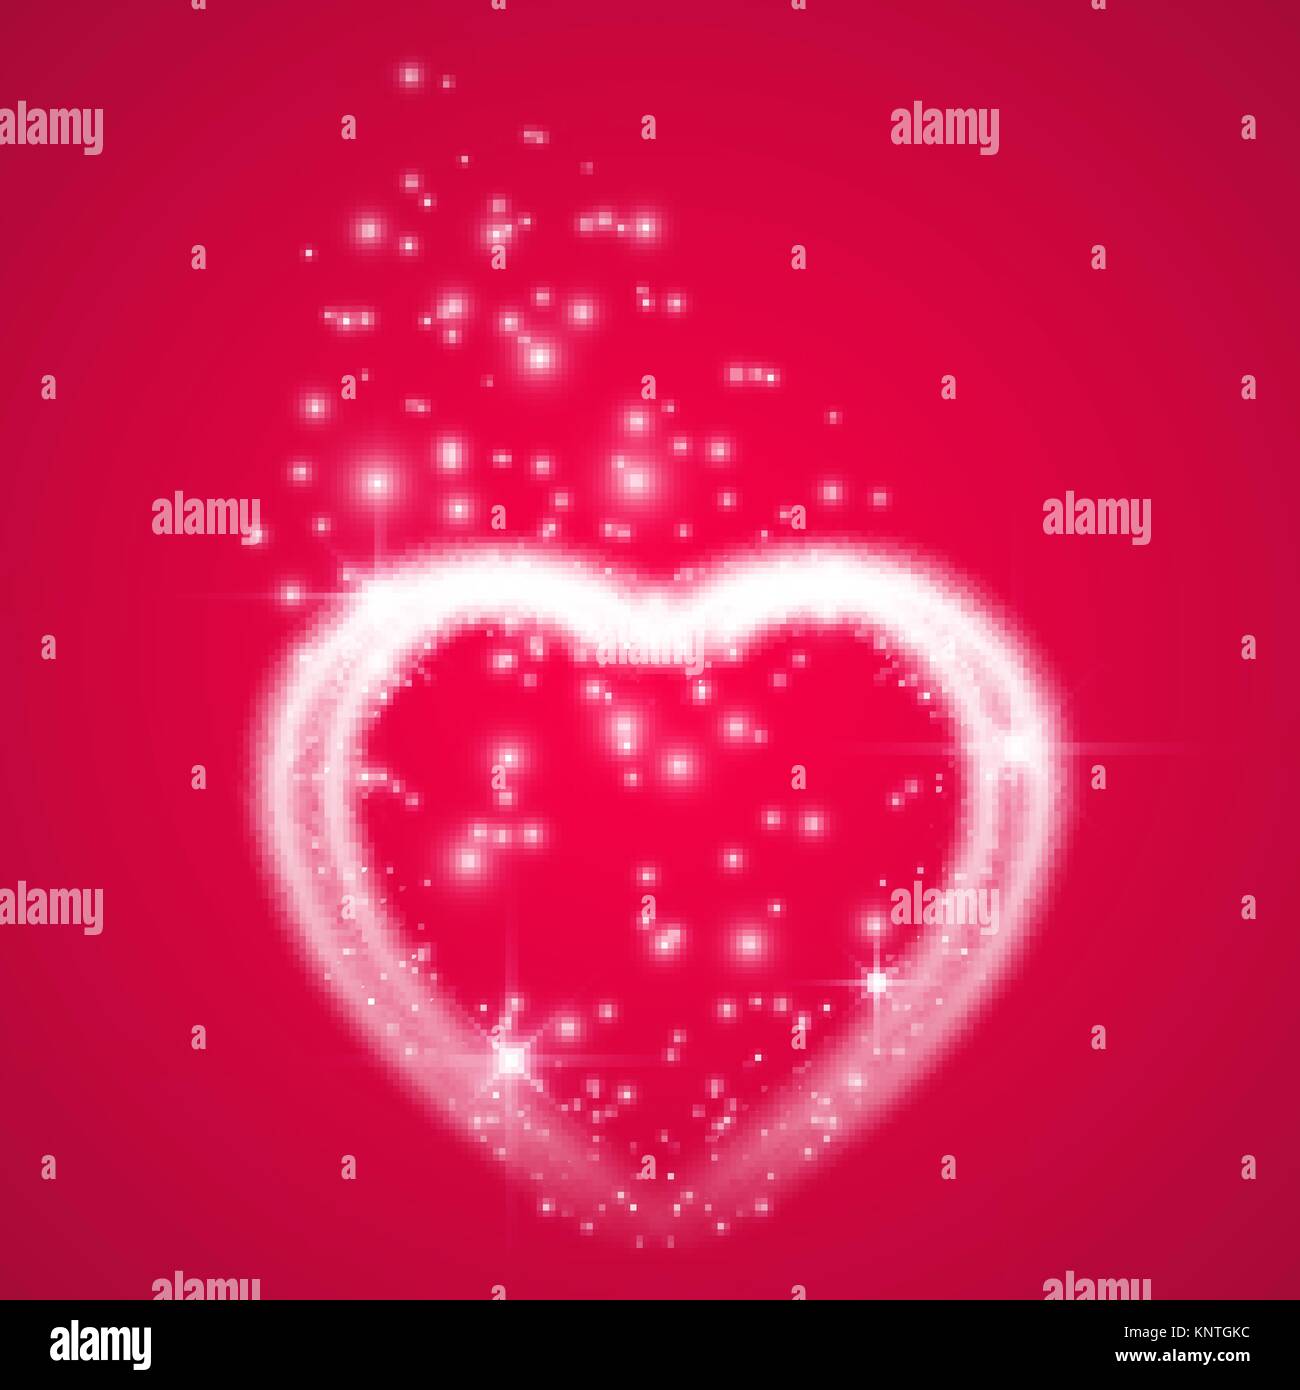 Happy Valentines Day greeting card. Io vi amo. 14 febbraio. Holiday sfondo con cuori con freccia, luce, stelle su backgraund rosa. Illustrazione Vettoriale Illustrazione Vettoriale